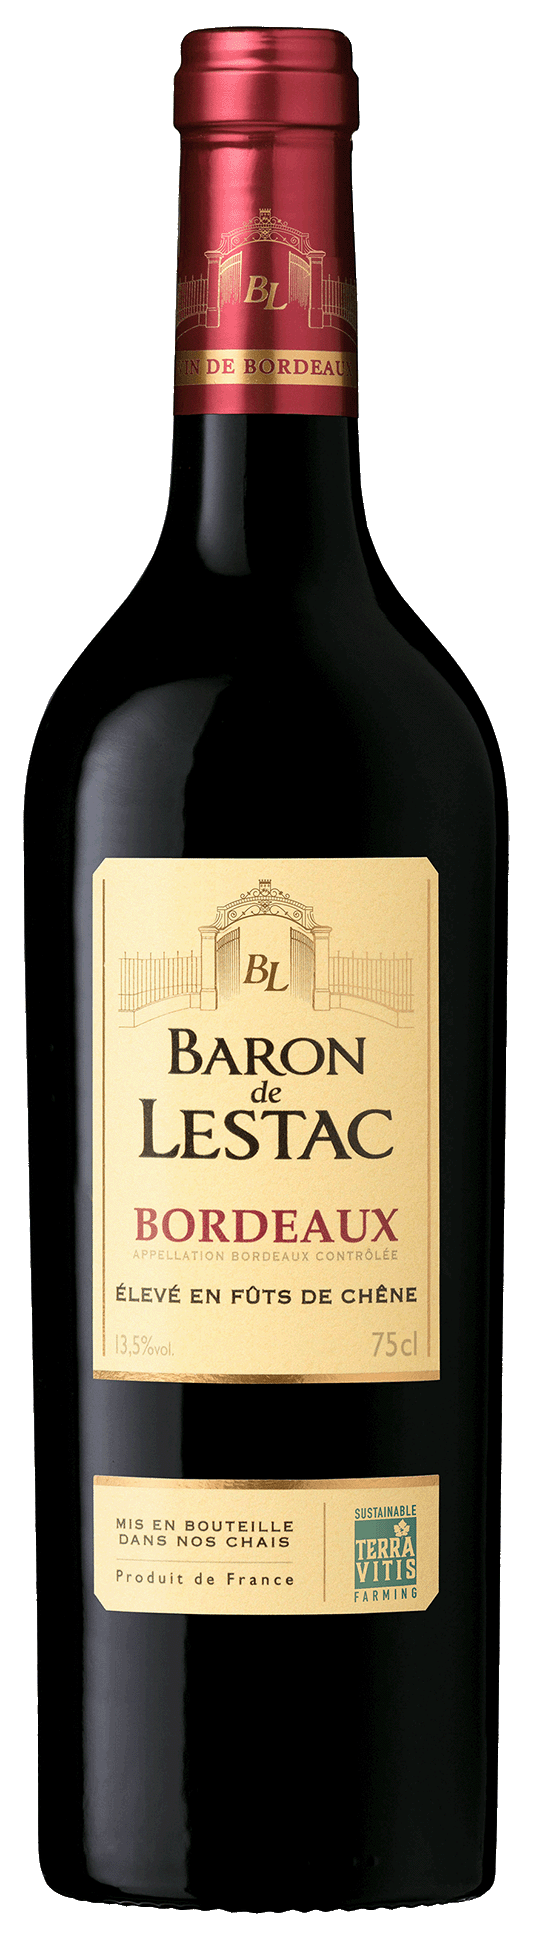 Baron de Lestac red wine bottle